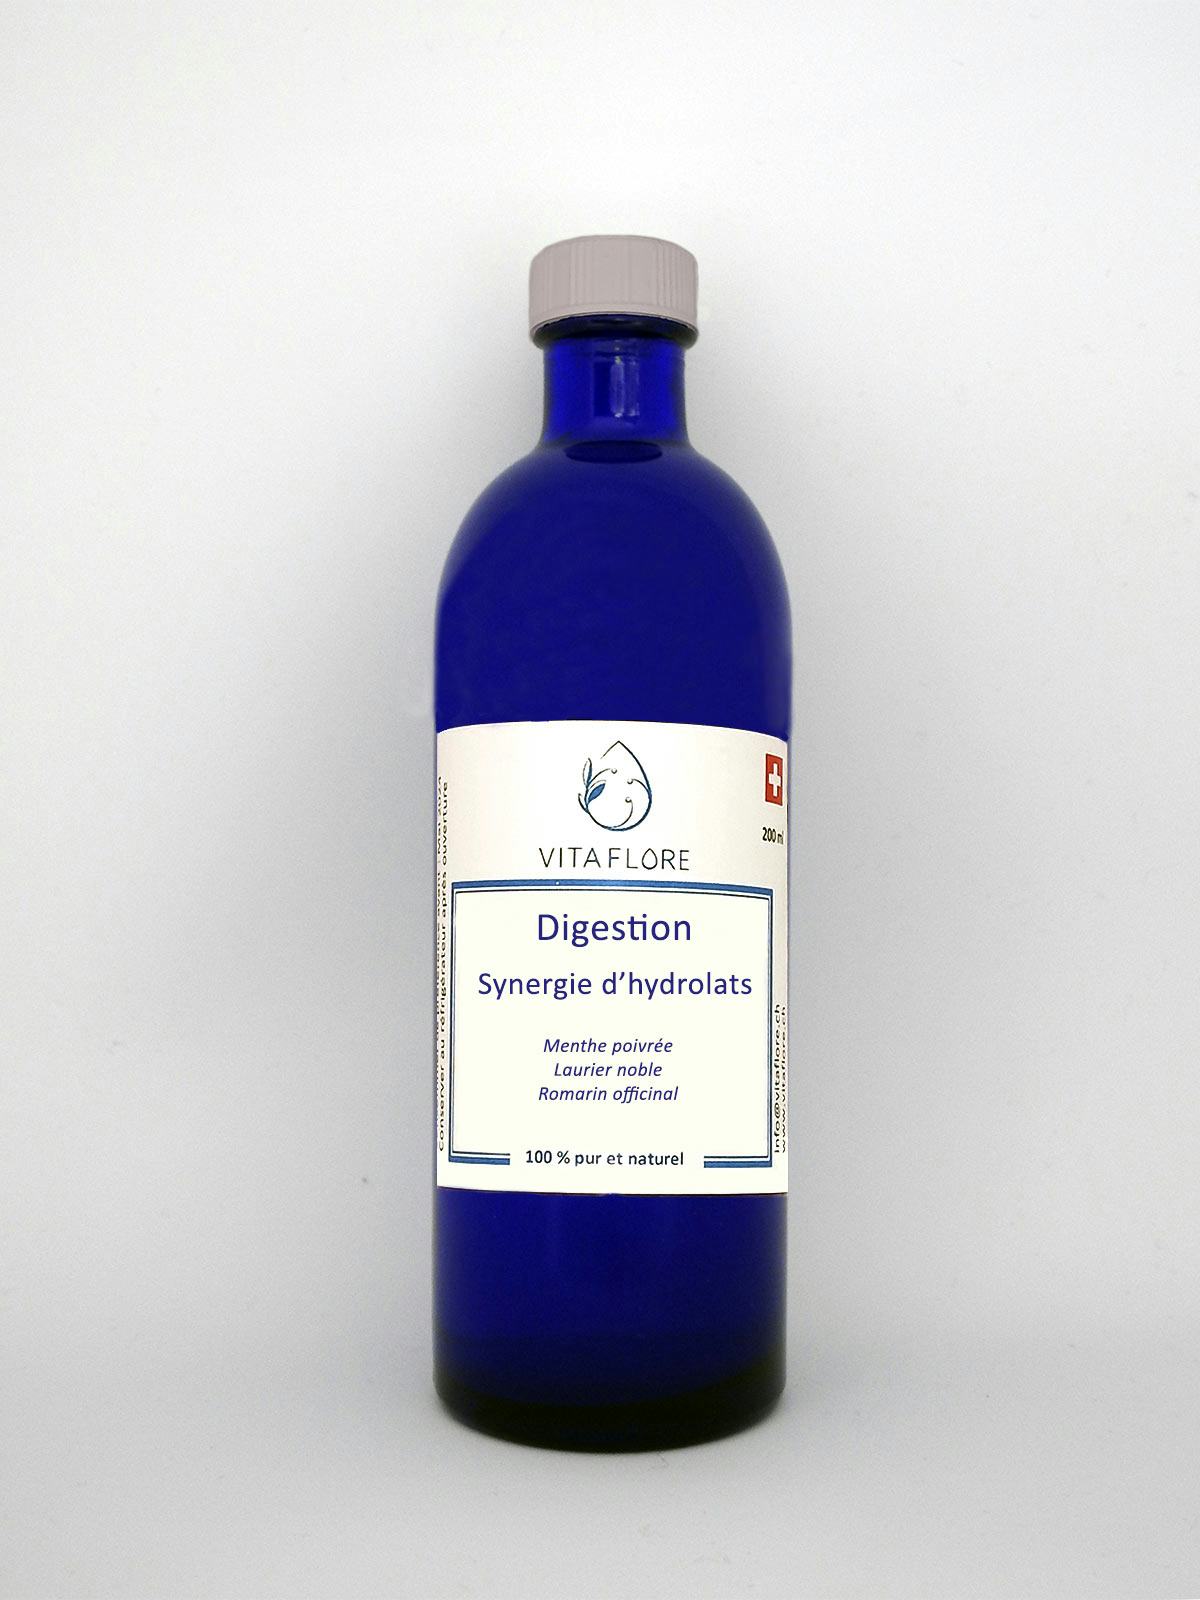 Synergie d’hydrolats – Digestion, prodotto artigianale per la vendita diretta in Svizzera